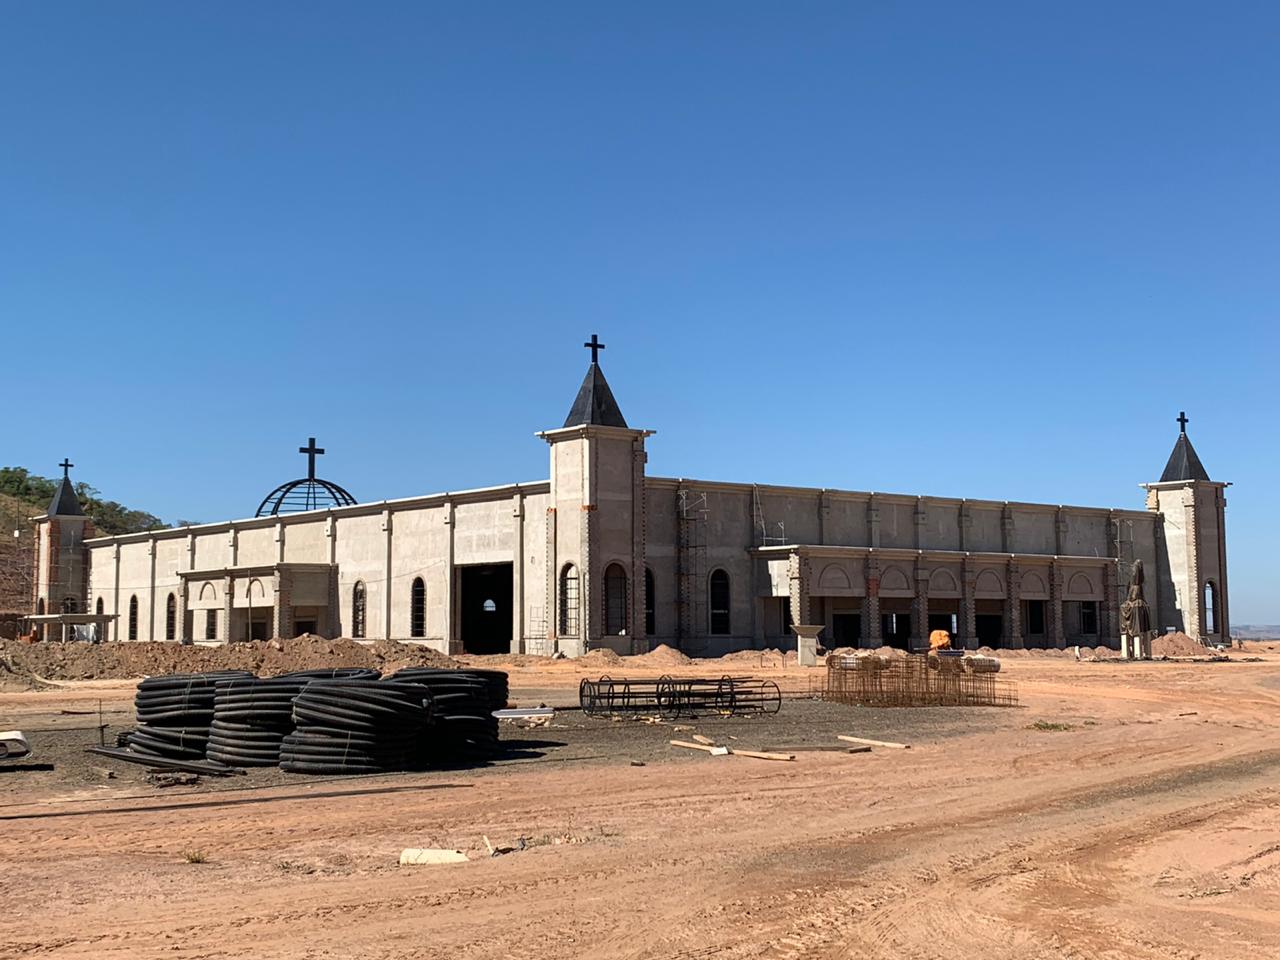 Cidade mineira vai sediar o maior santuário dedicado a Santa Rita de Cássia do mundo